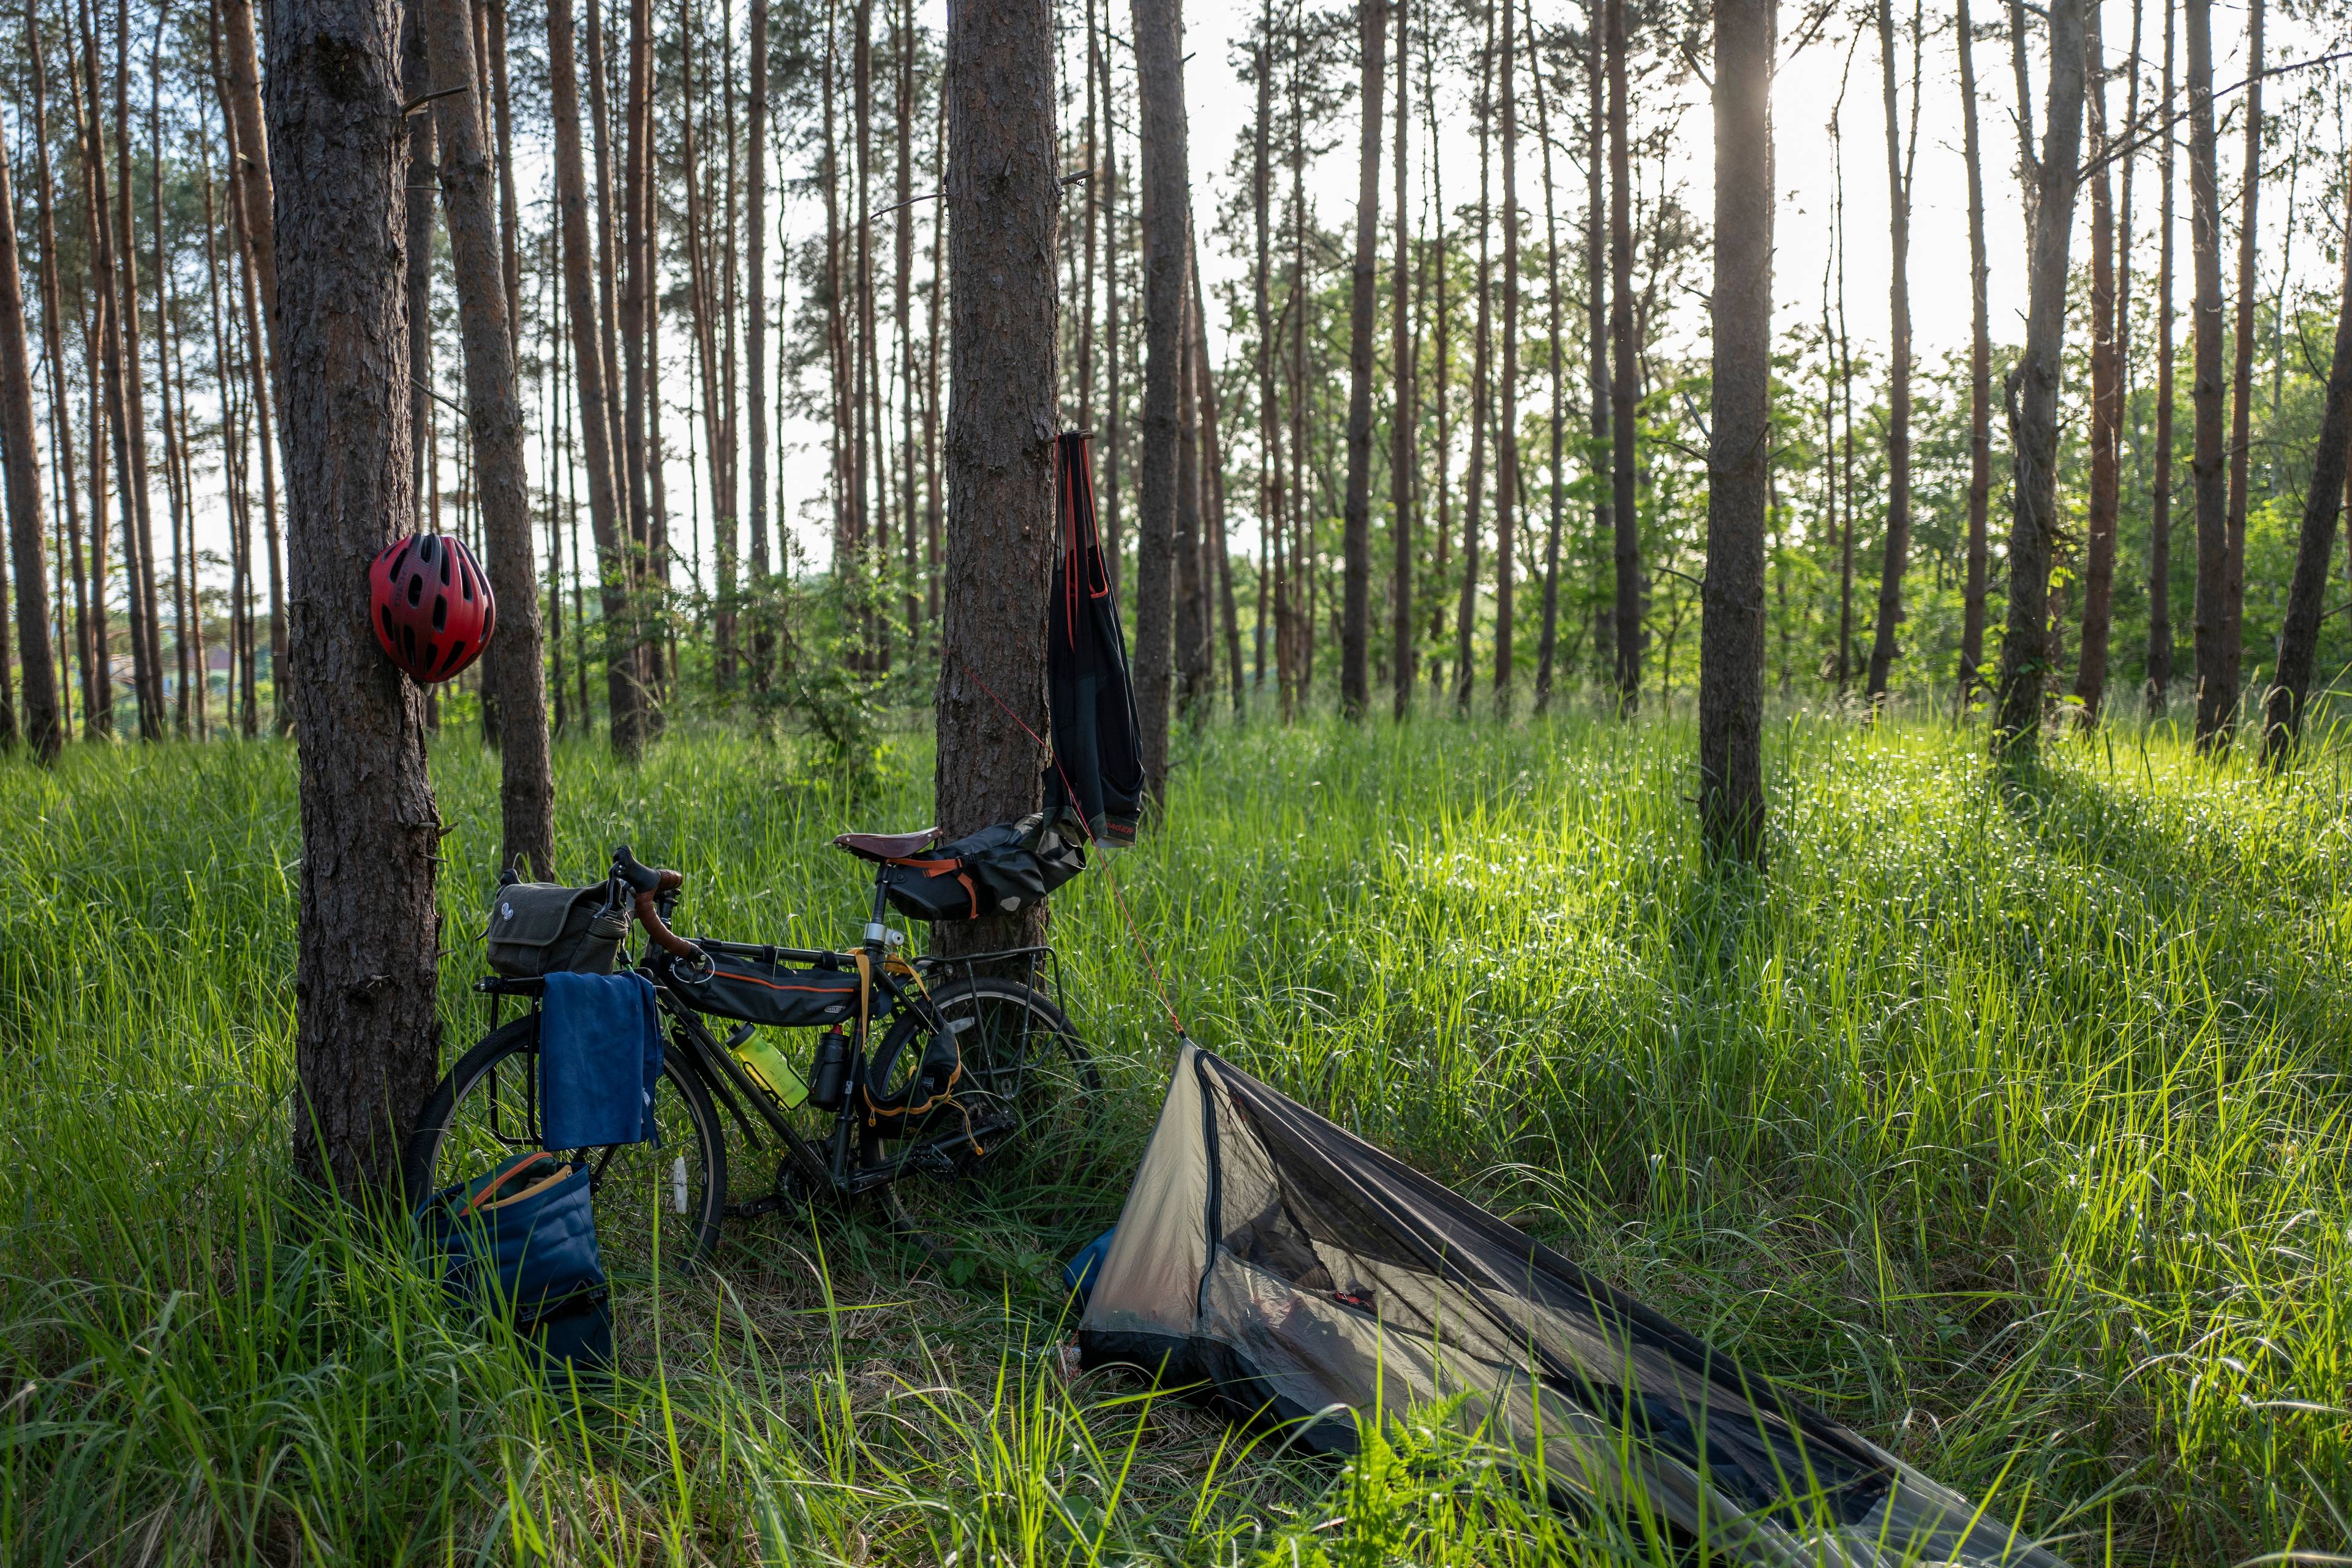 leśny biwak: pod drzewem stoi rower gravel z sakwami, na drzewie suszą się spodnie rowerowe, a w trawie leży mały namiot.